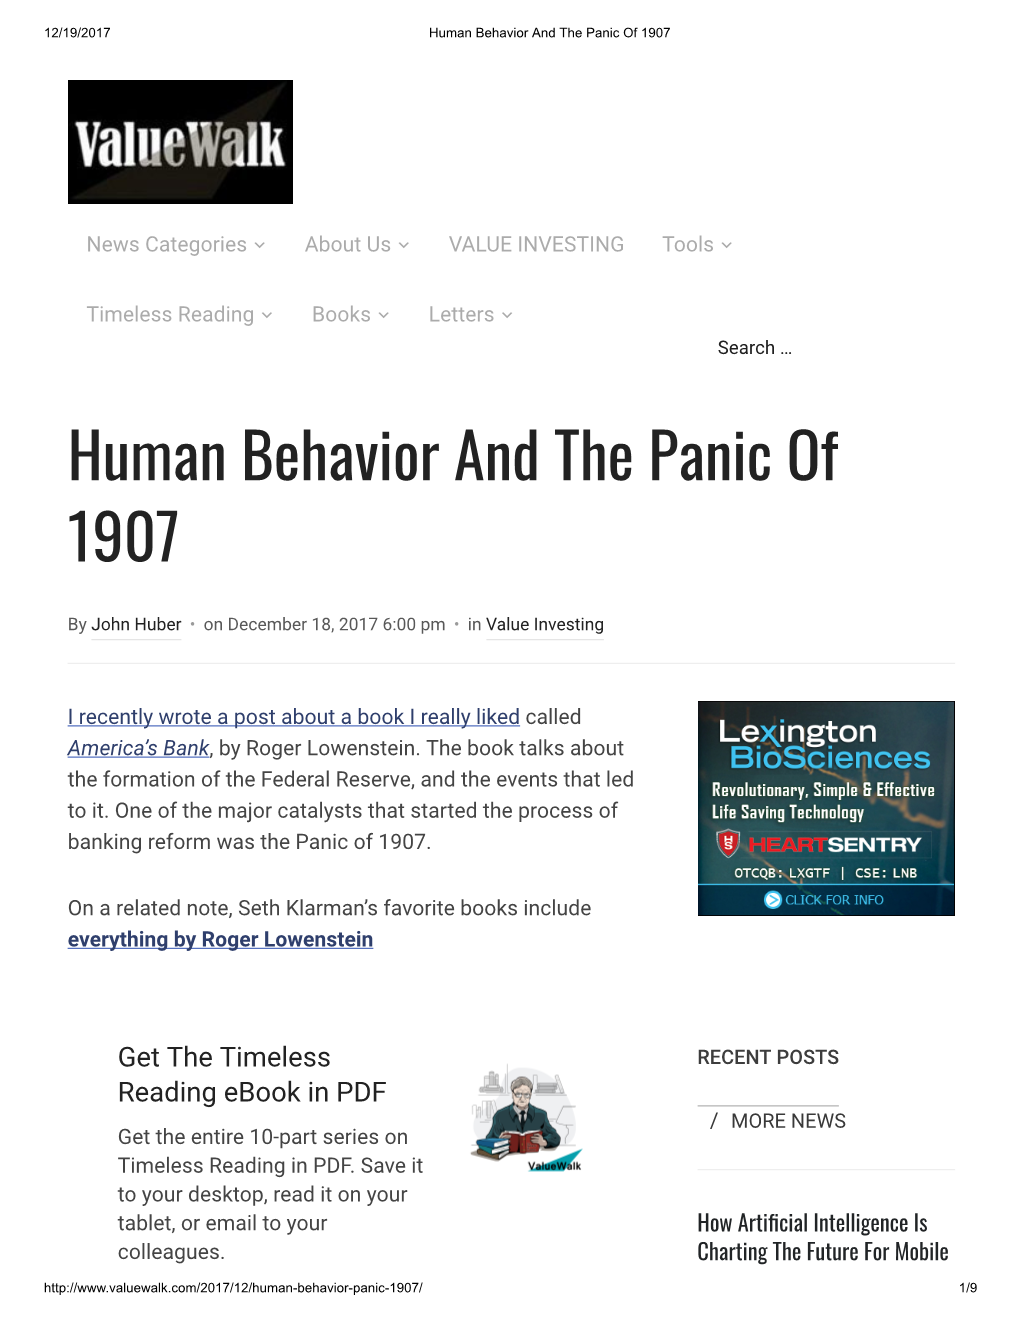 Human Behavior and the Panic of 1907